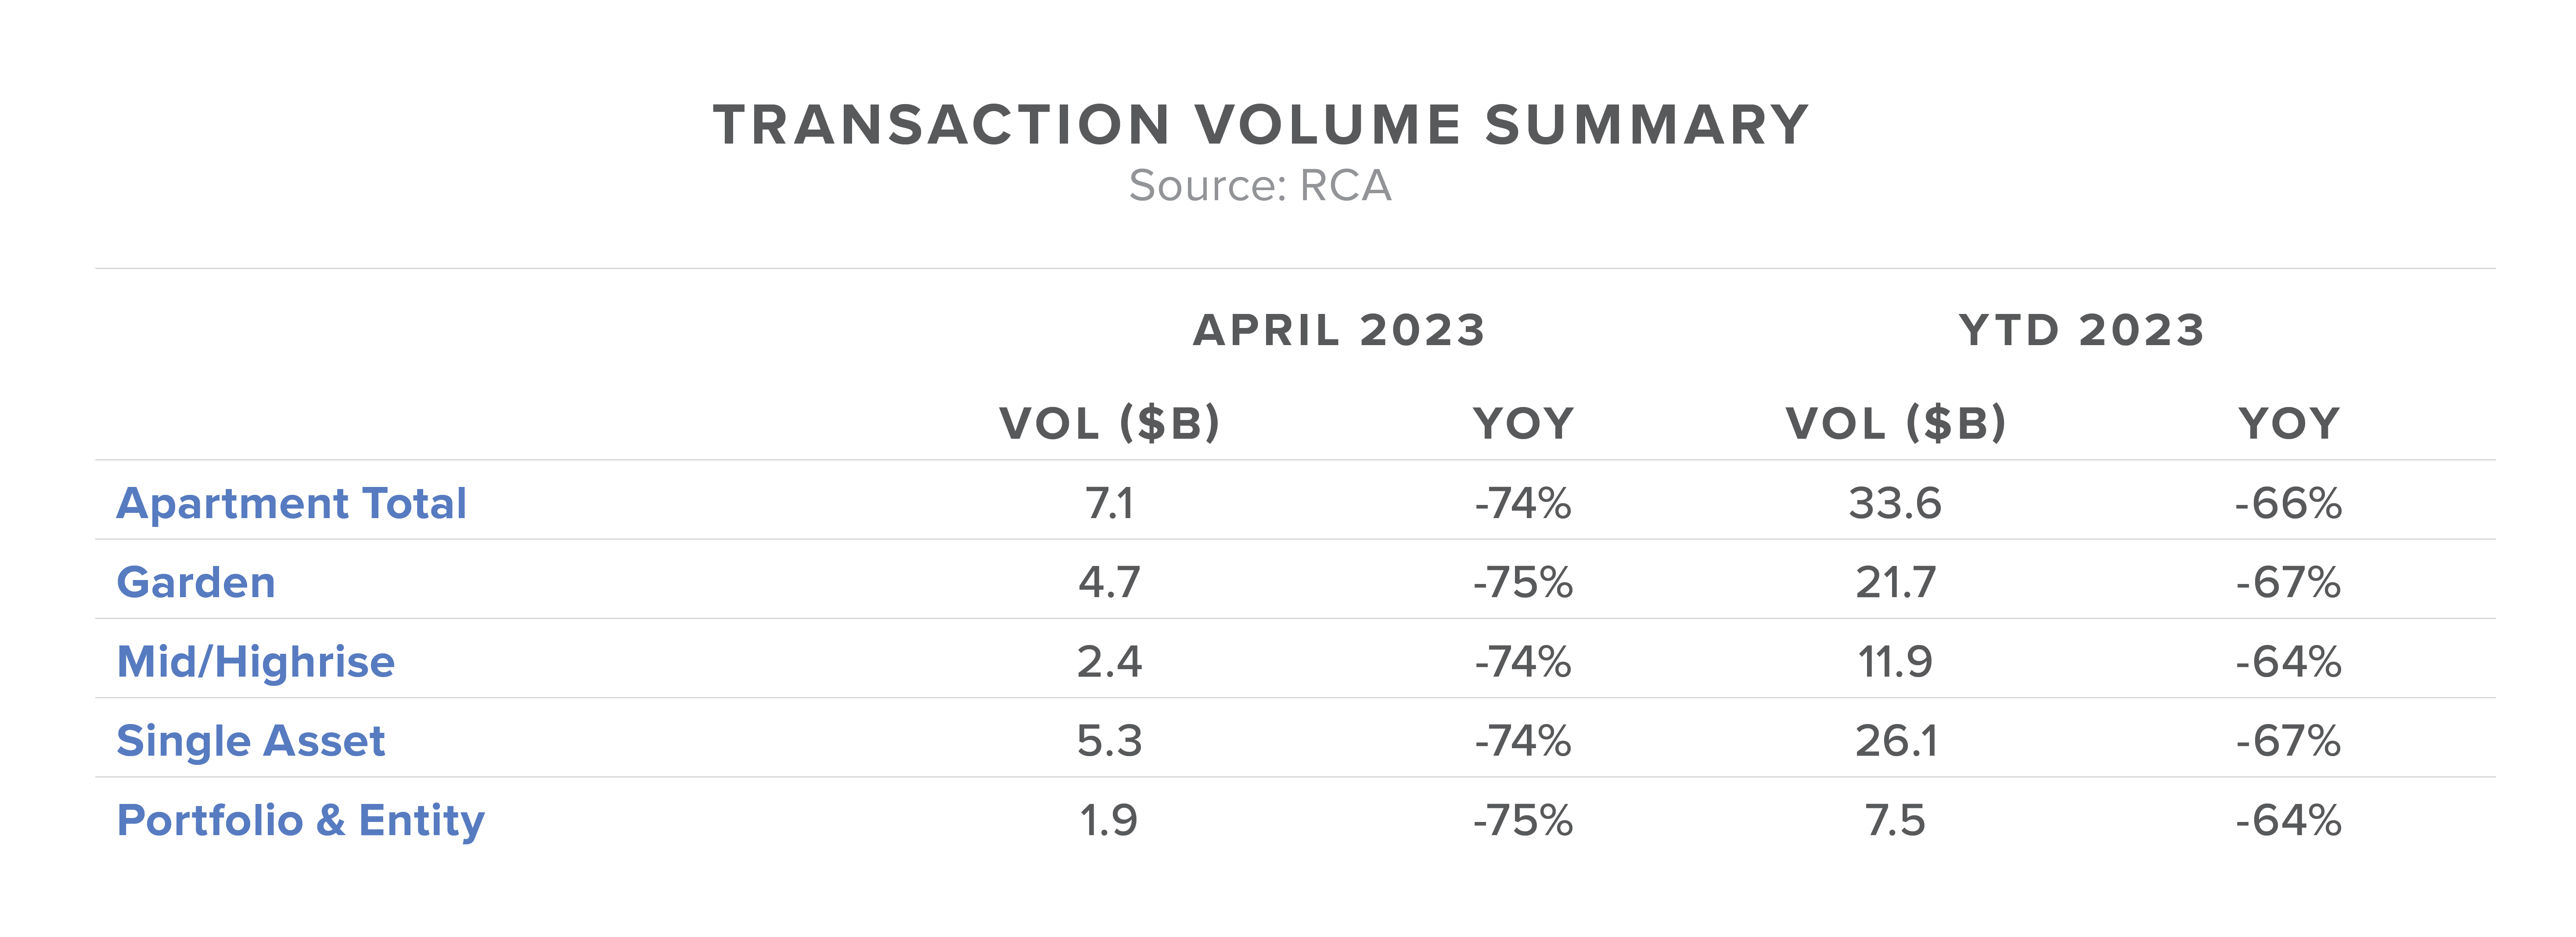 Transaction Volume Summary 